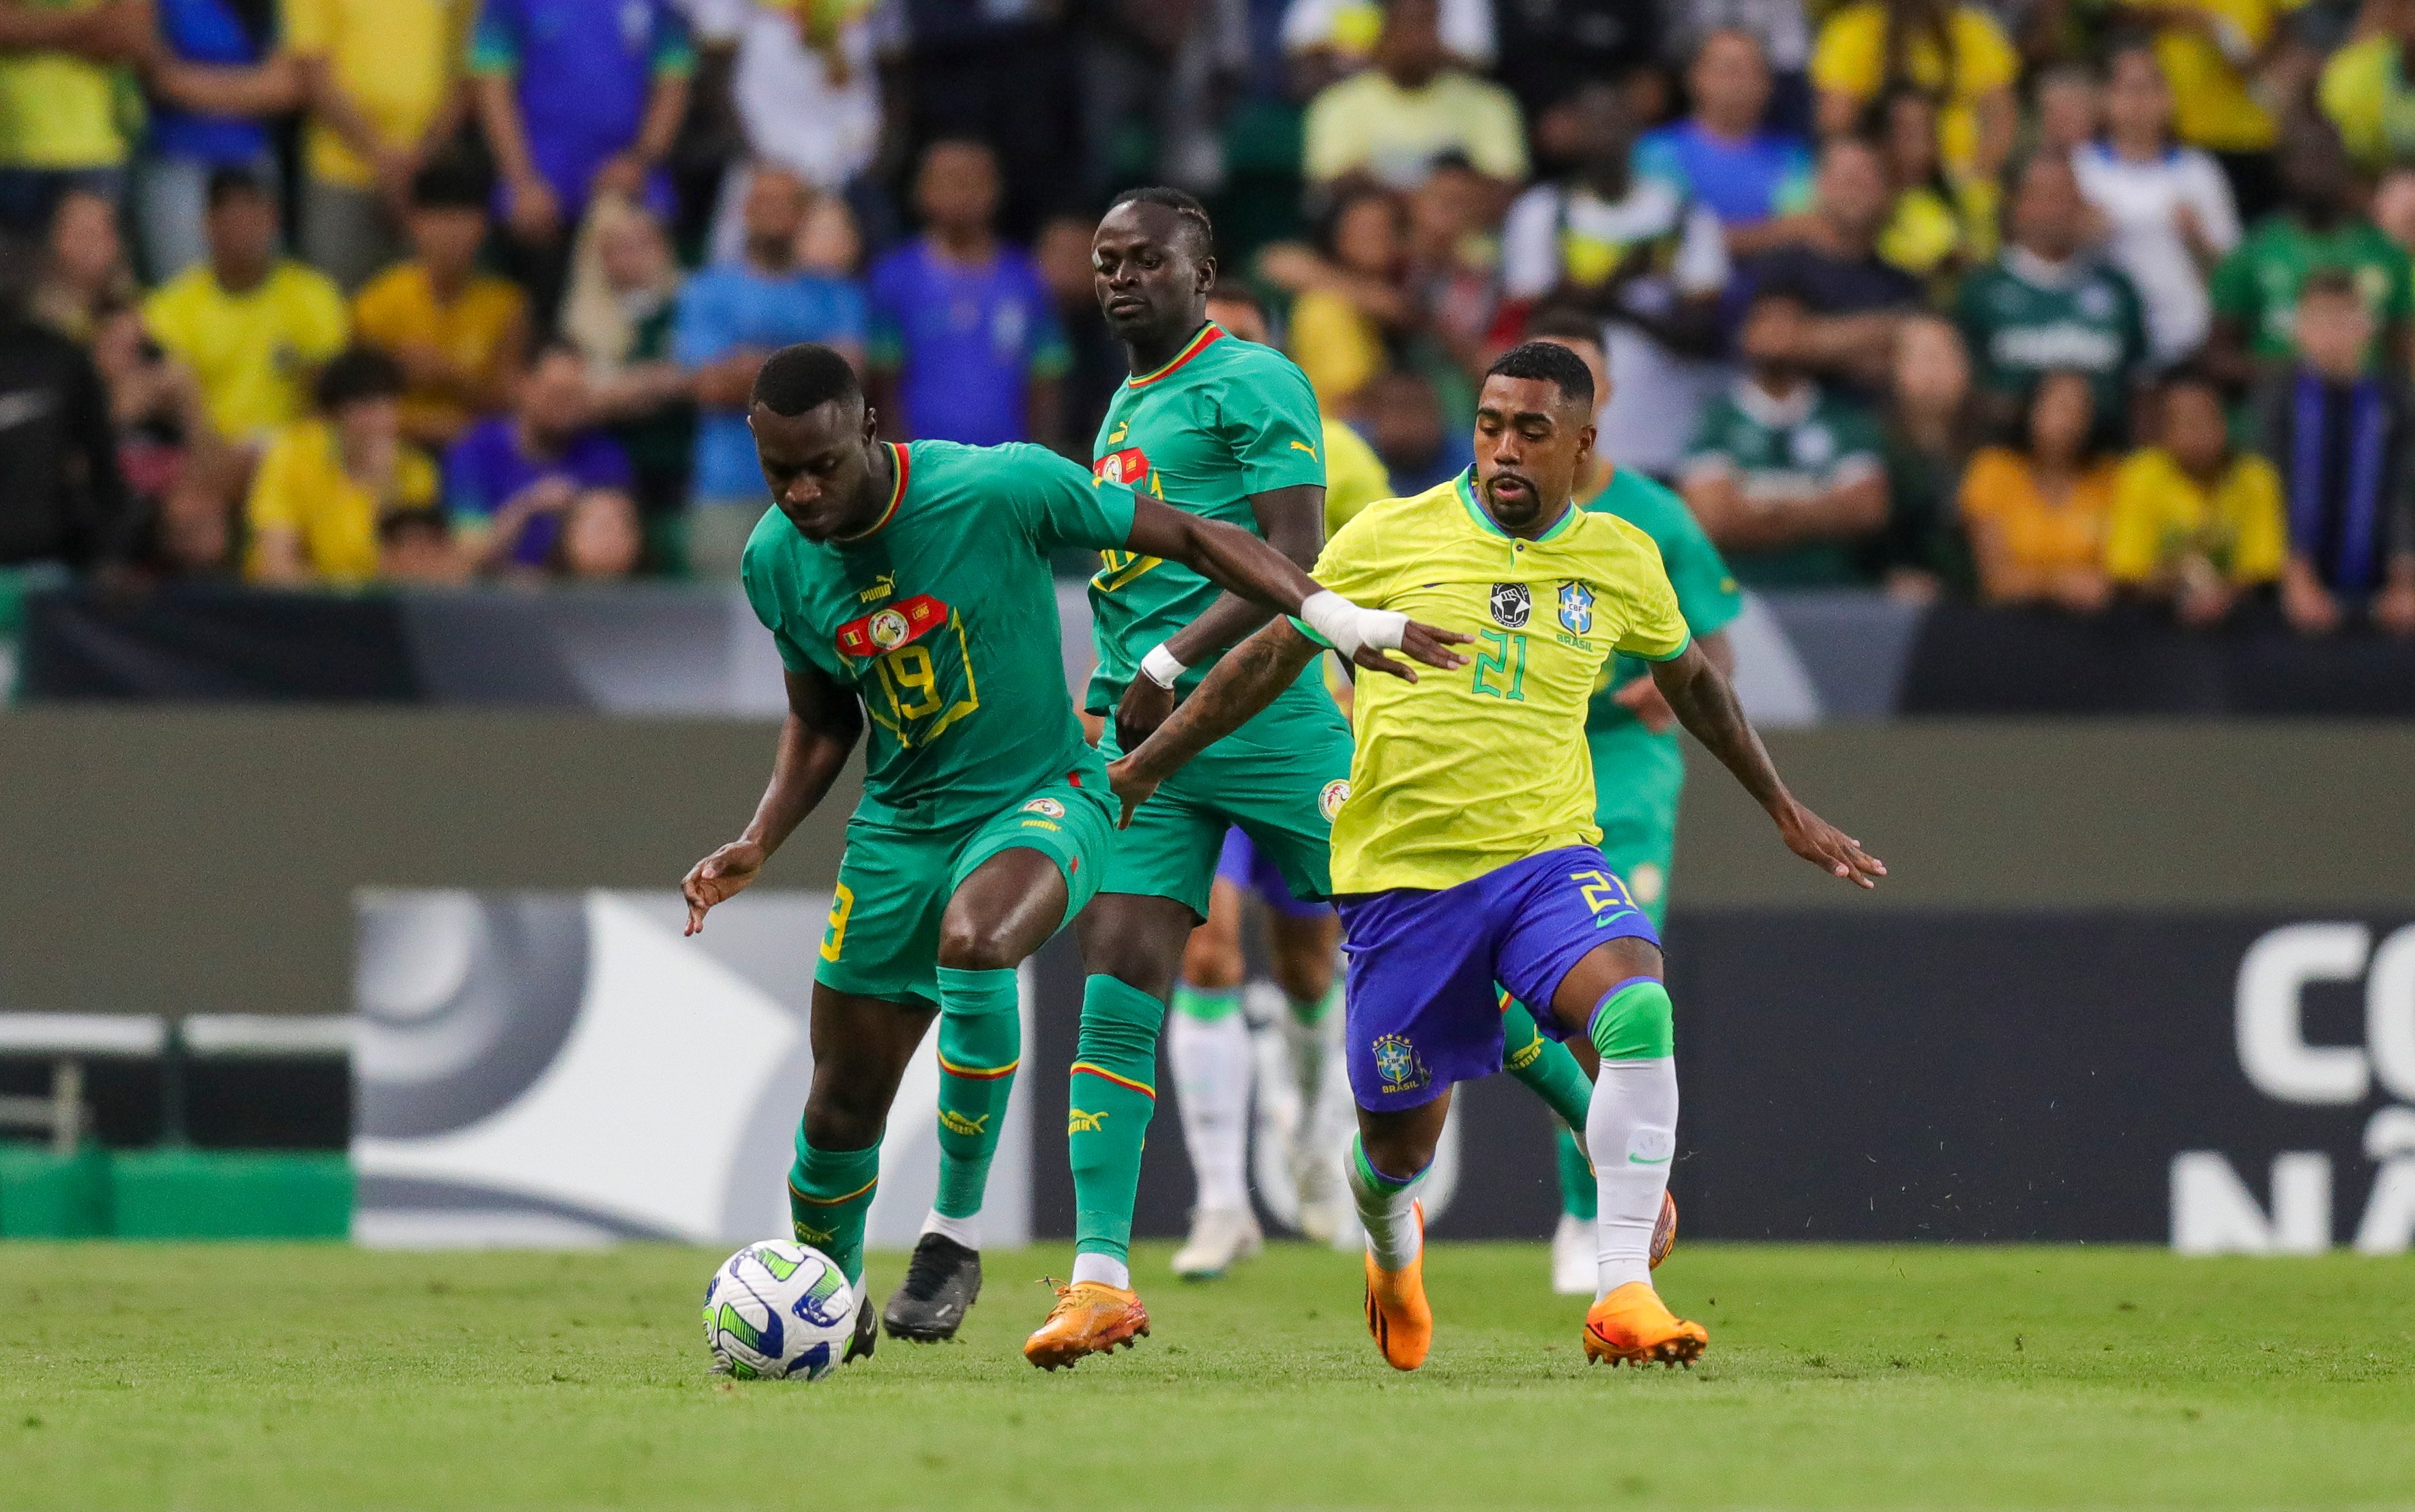 Em três amistosos após o Mundial do Catar, o Brasil perdeu dois e venceu apenas um. Nesta terça-feira (20), a Seleção jogou mal e foi superada pelos senegaleses